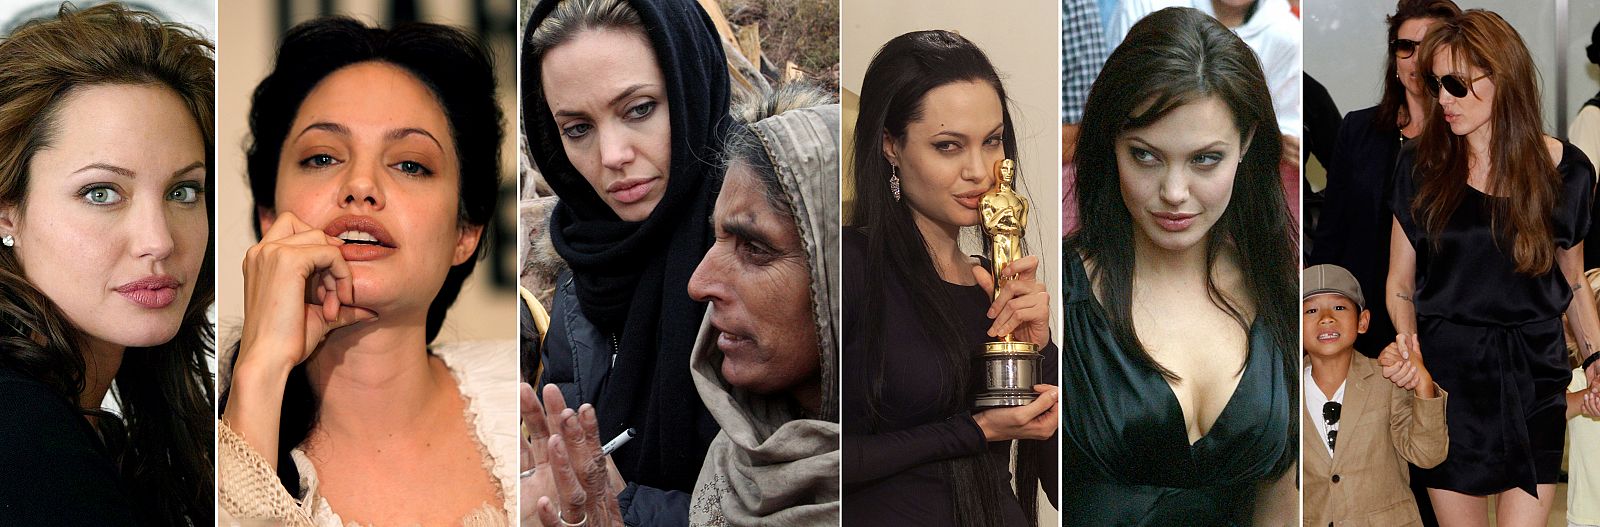 Angelina Jolie es una especie de 'superwoman' del siglo XXI